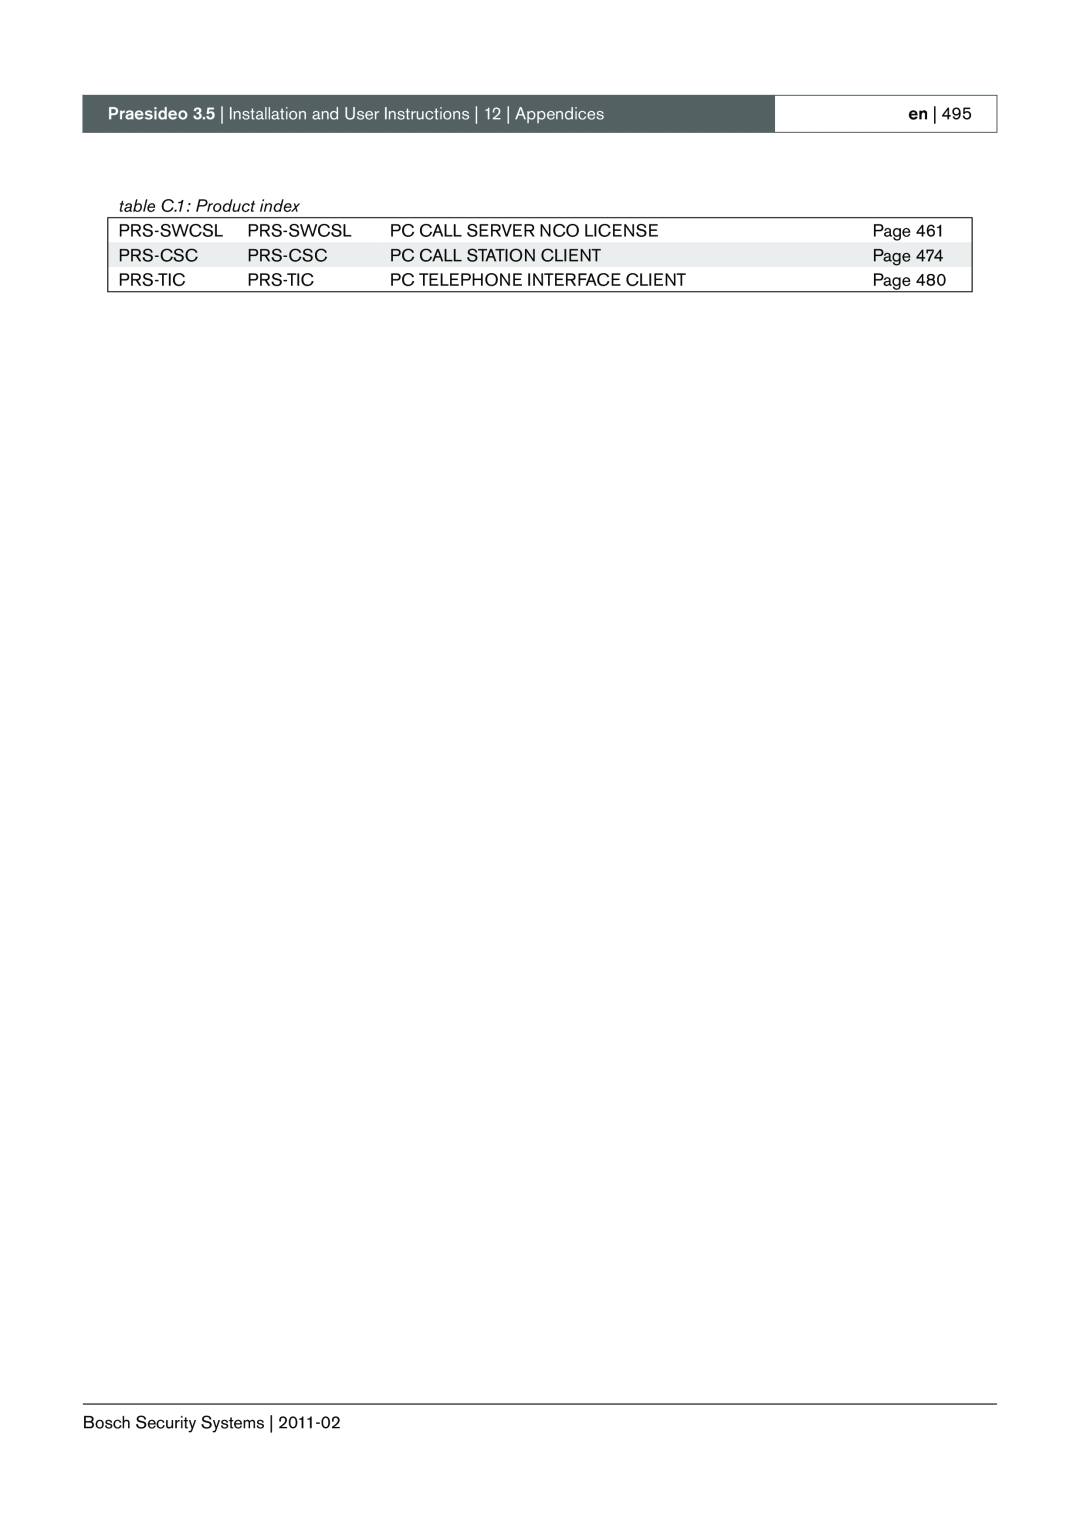 Bosch Appliances 3.5 manual en, table C.1: Product index 